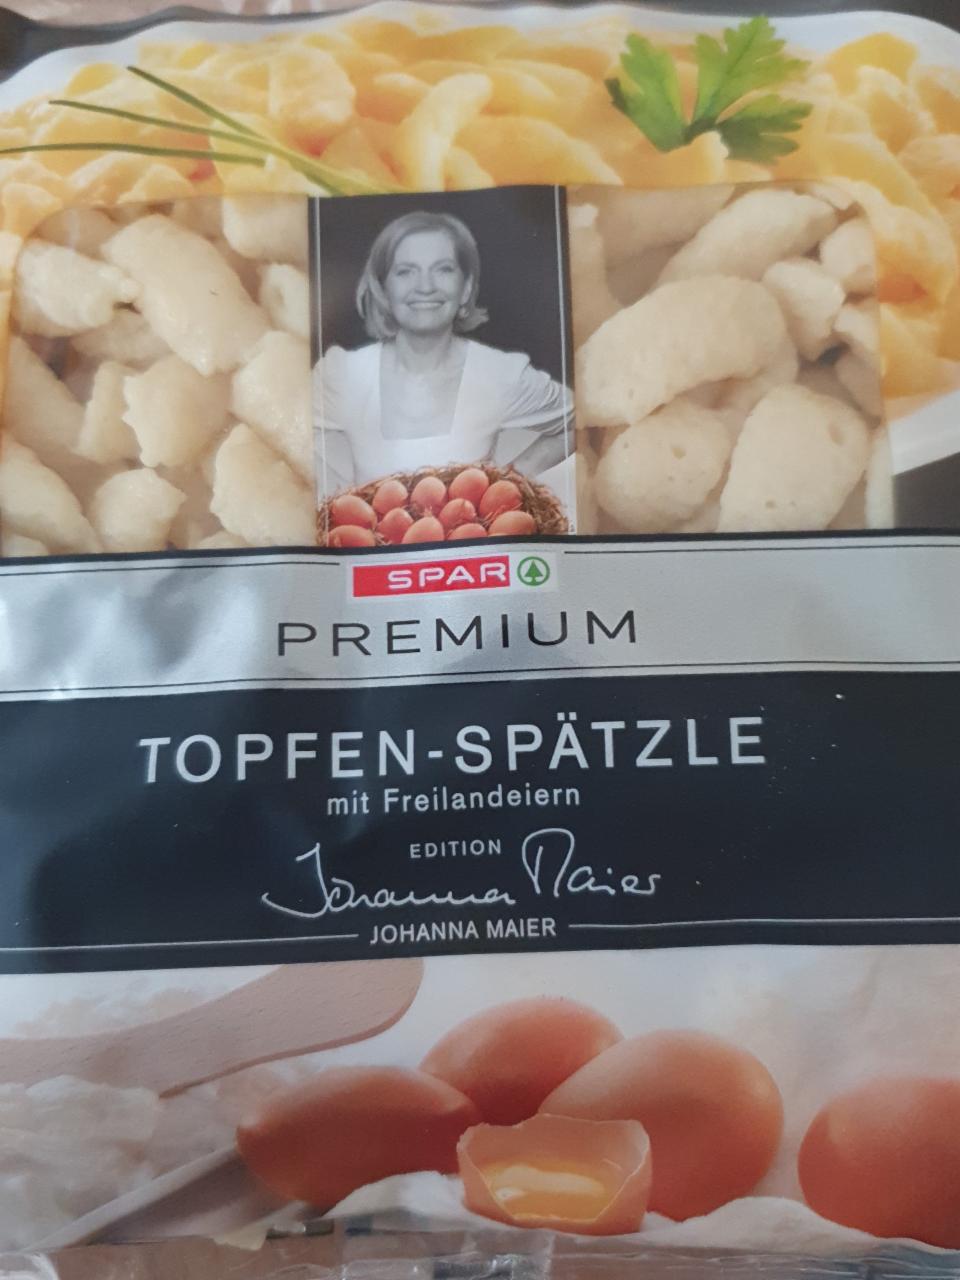 Fotografie - Topfen-Spätzle Spar Premium